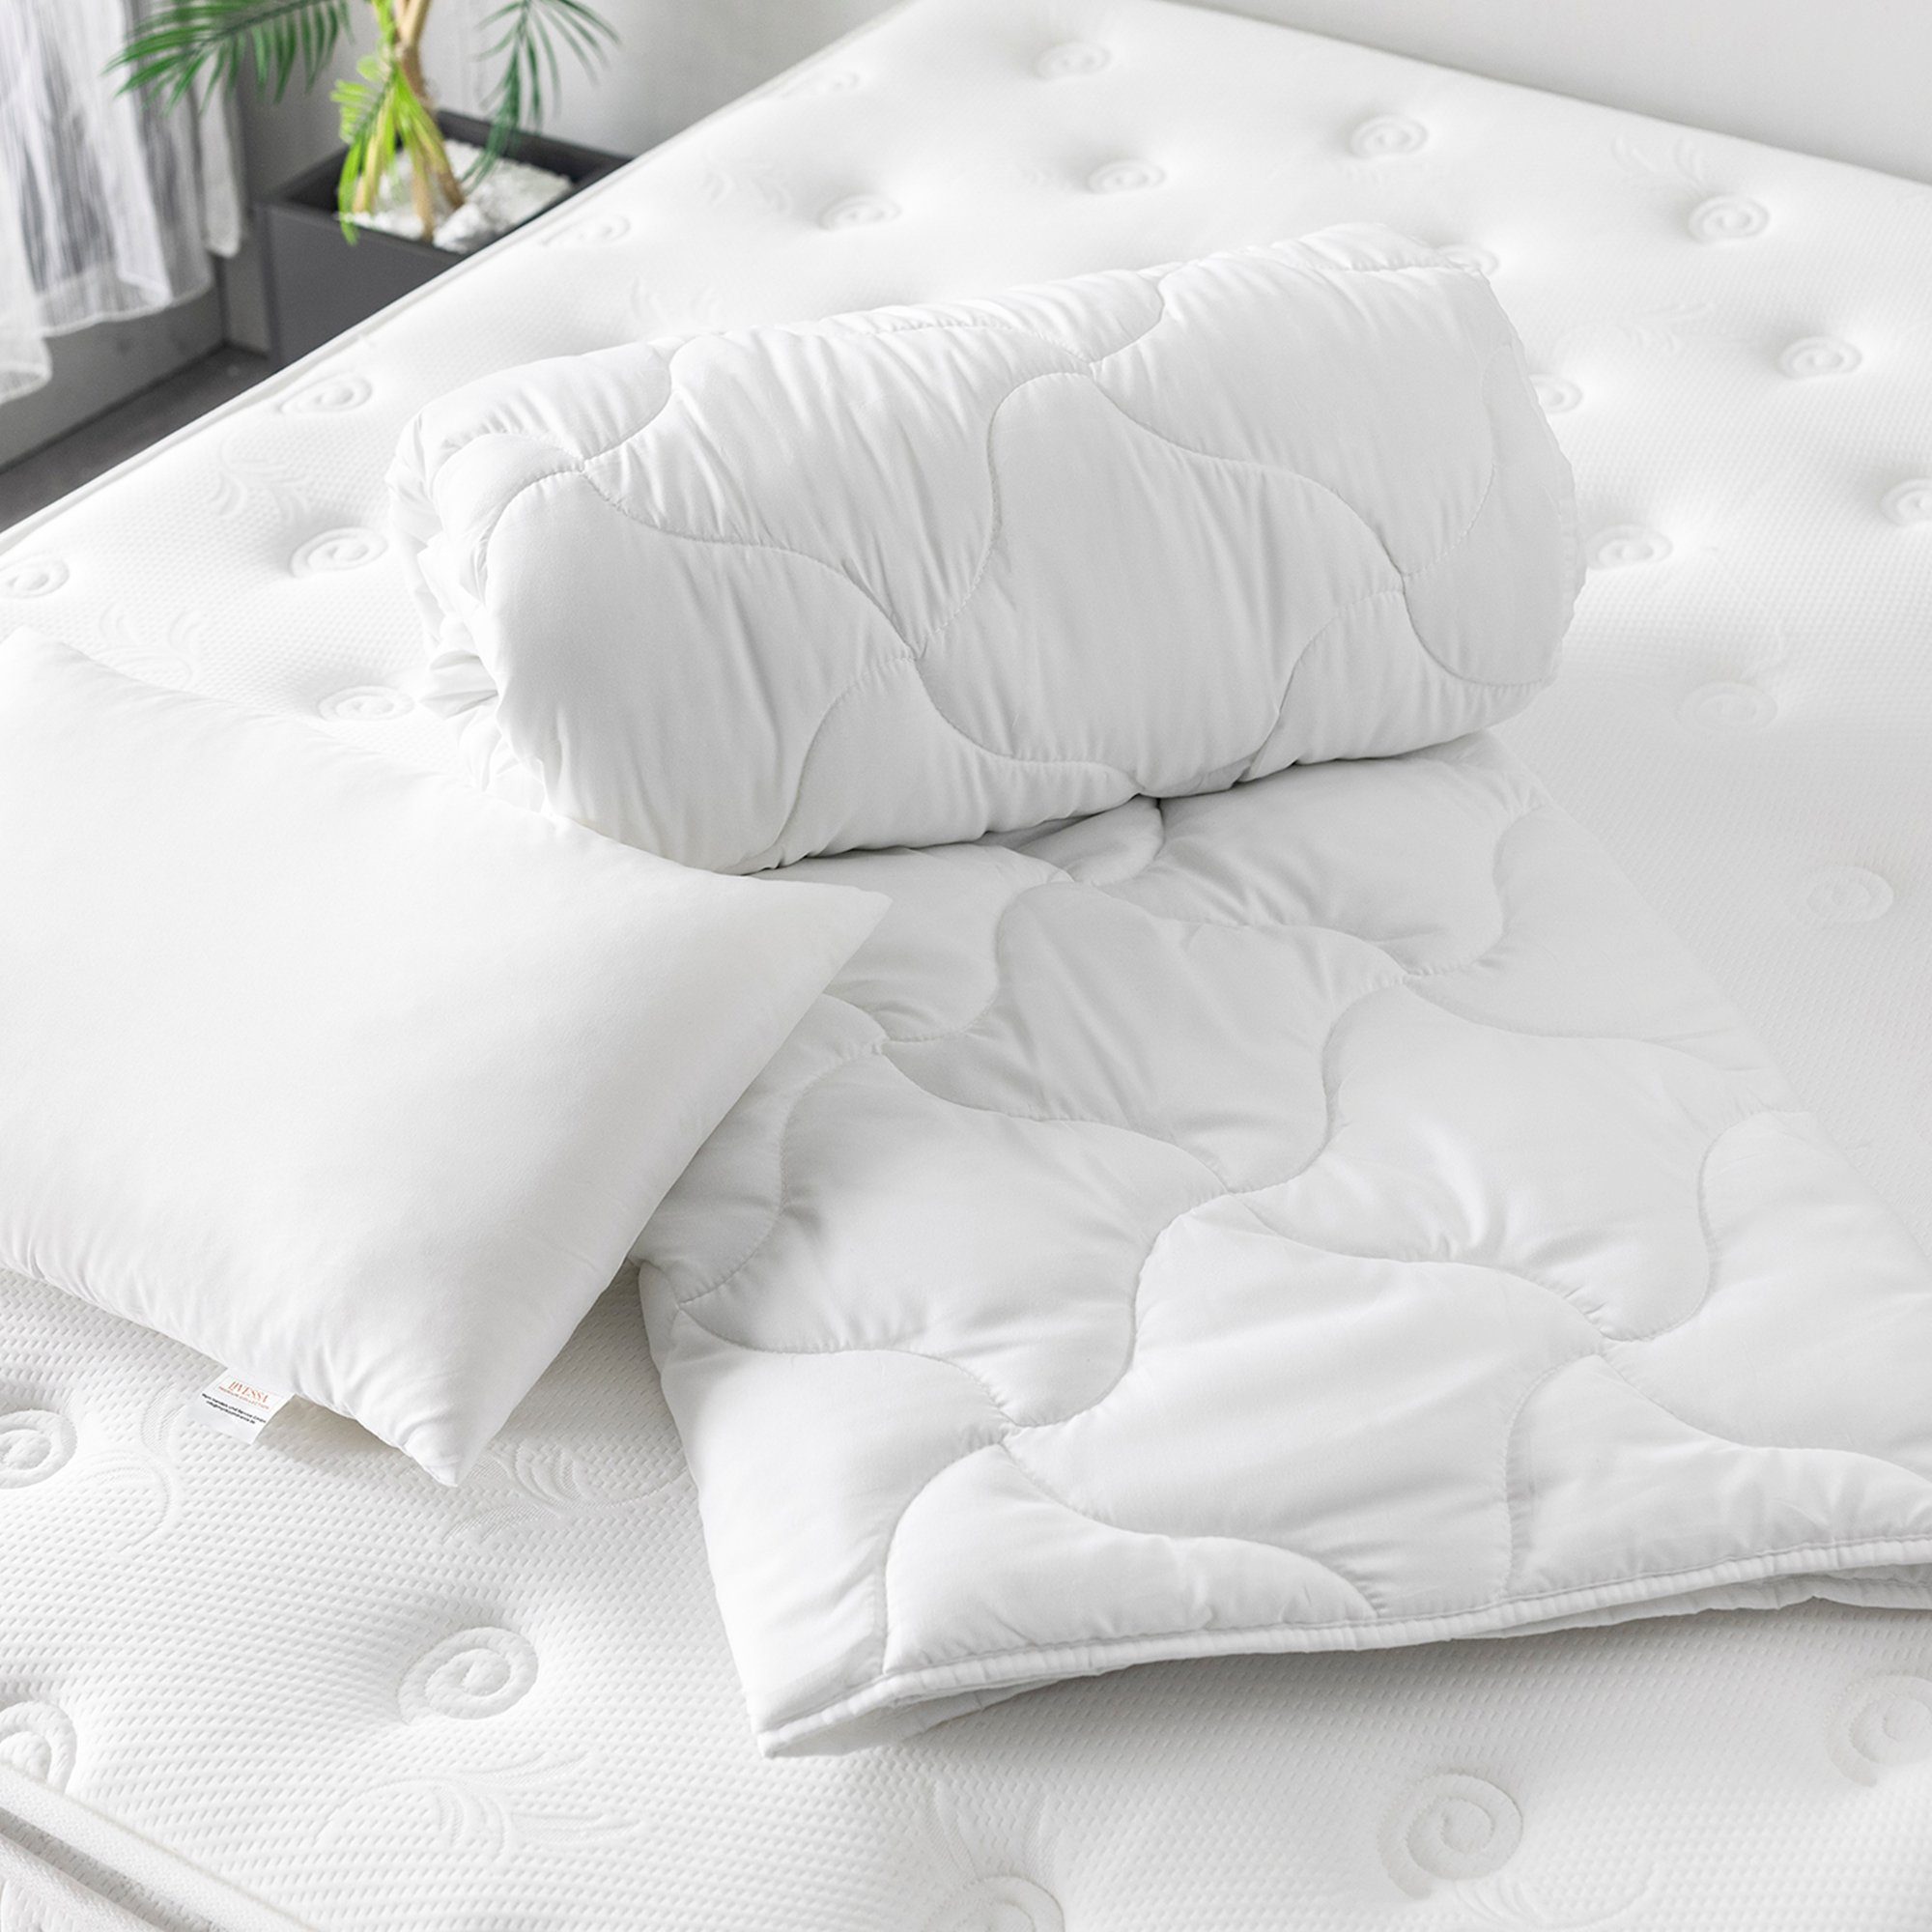 Kopfkissen, g/m² Ideal + SET und für Ganzjahreszeiten Bettwaren Füllung, mit atmungsaktiv 300 livessa, weich Bettdecke